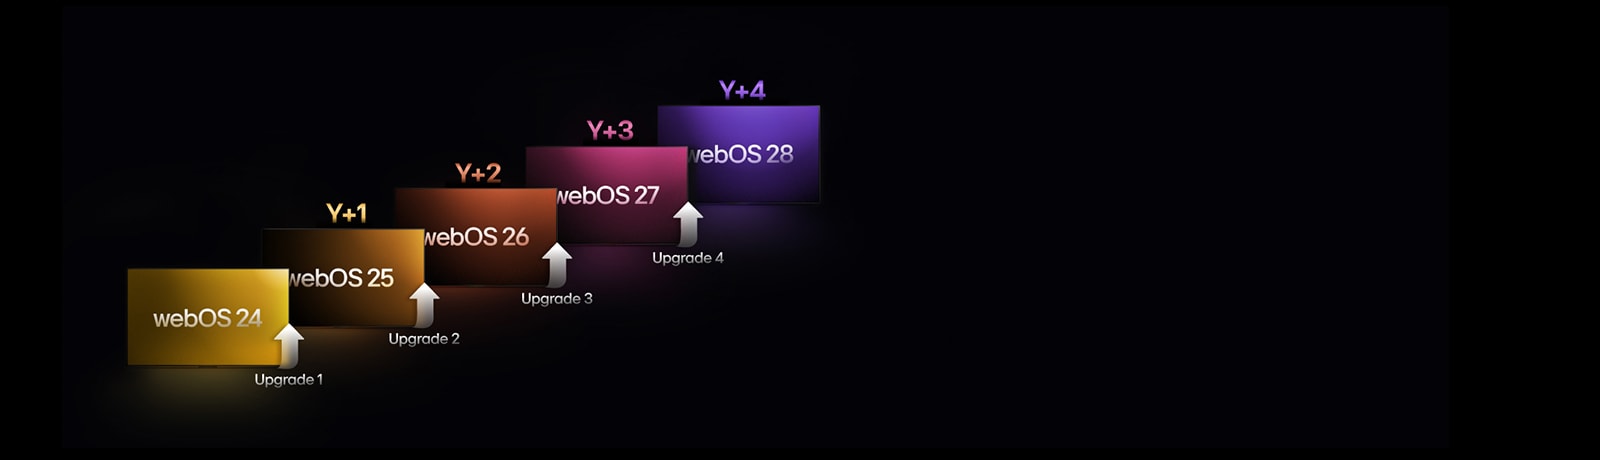 Năm hình chữ nhật có màu sắc khác nhau được xếp so le hướng lên trên, mỗi hình chữ nhật được gắn nhãn năm từ "webOS 24" đến "webOS 28". Mũi tên hướng lên nằm giữa các hình chữ nhật, được gắn nhãn từ "Nâng cấp 1" đến "Nâng cấp 4".